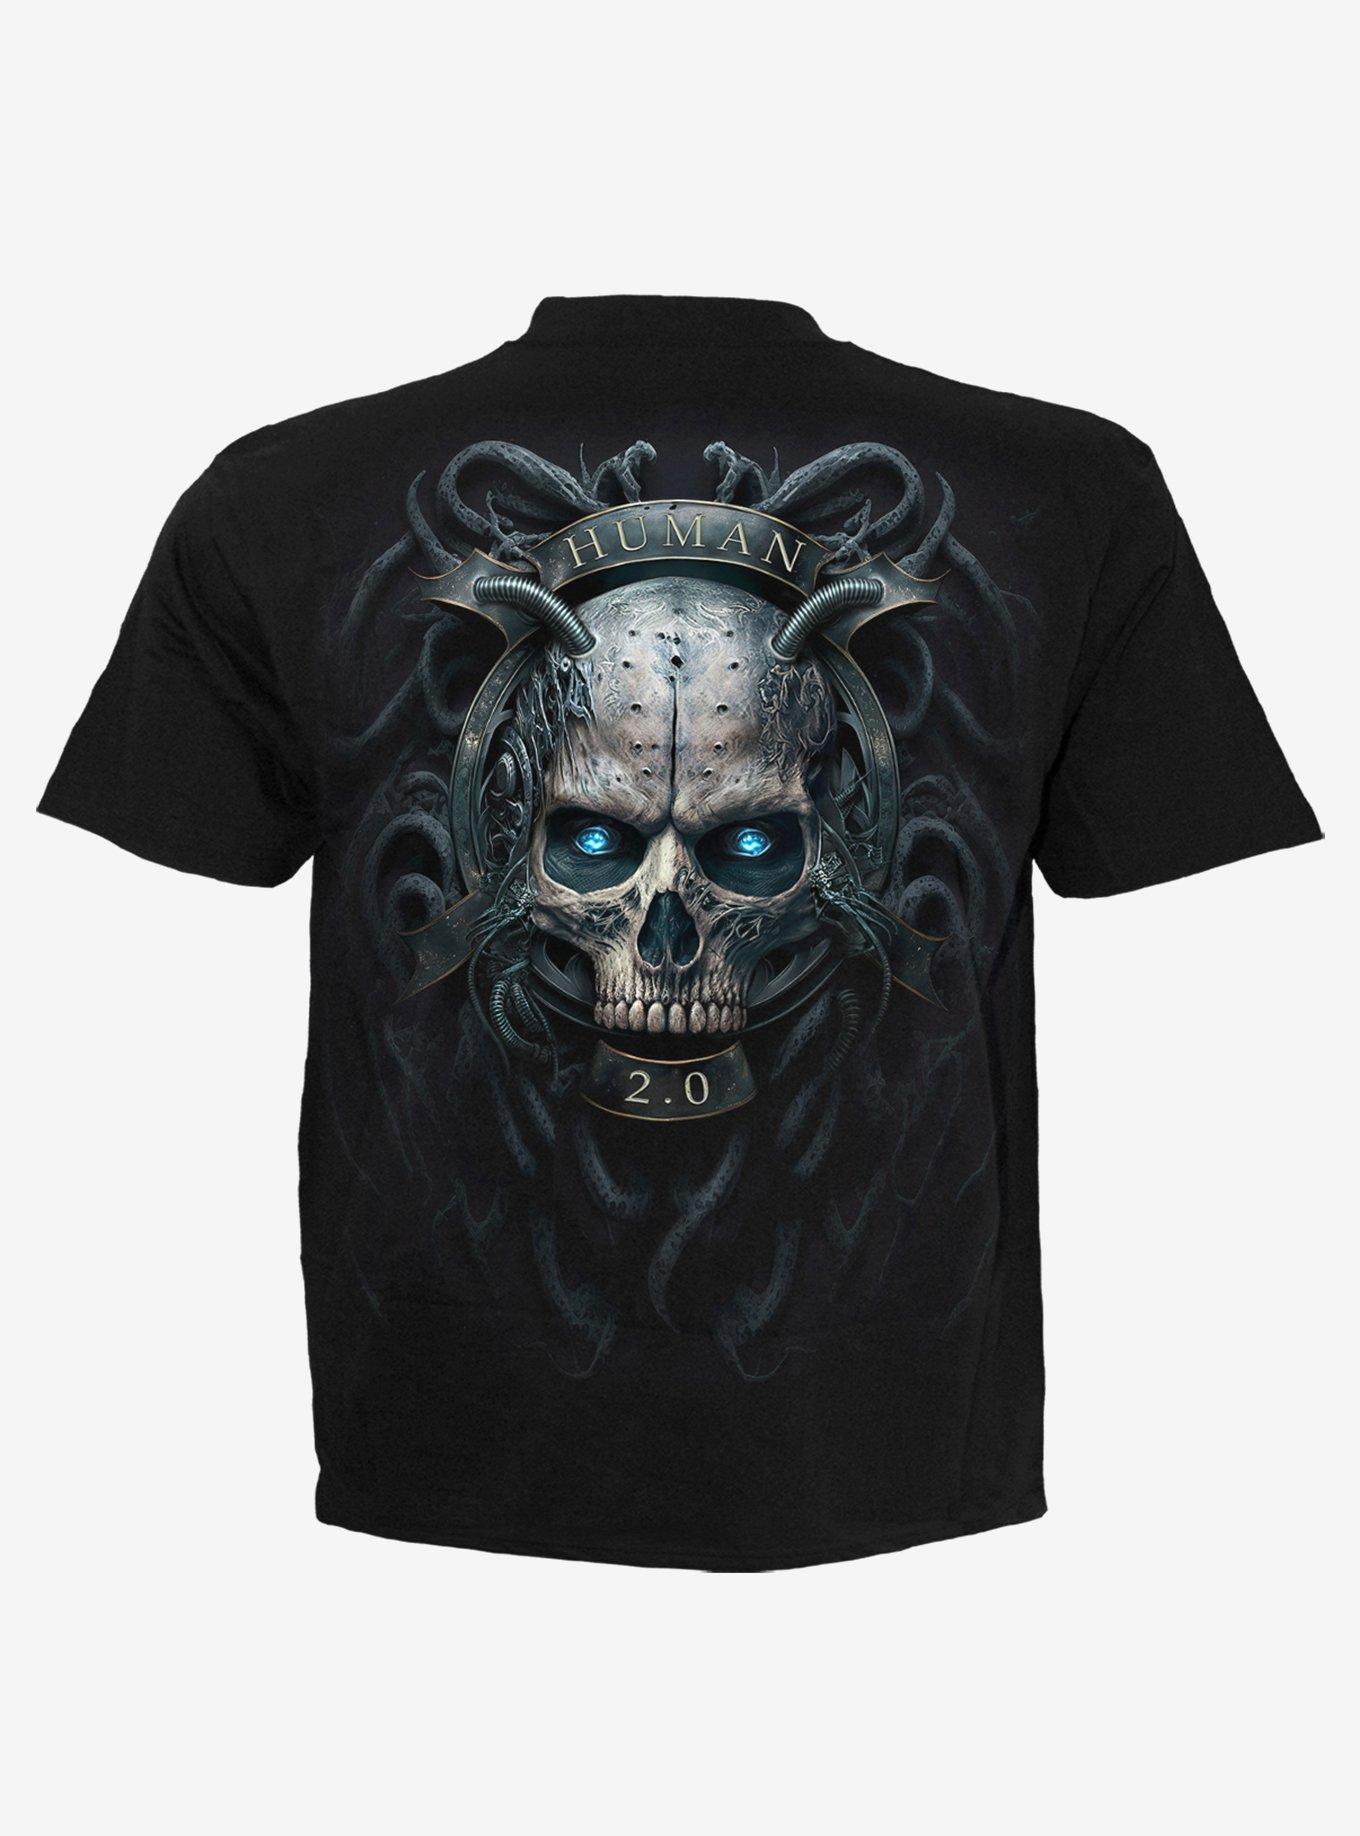 Spiral Human 2.0 T-Shirt